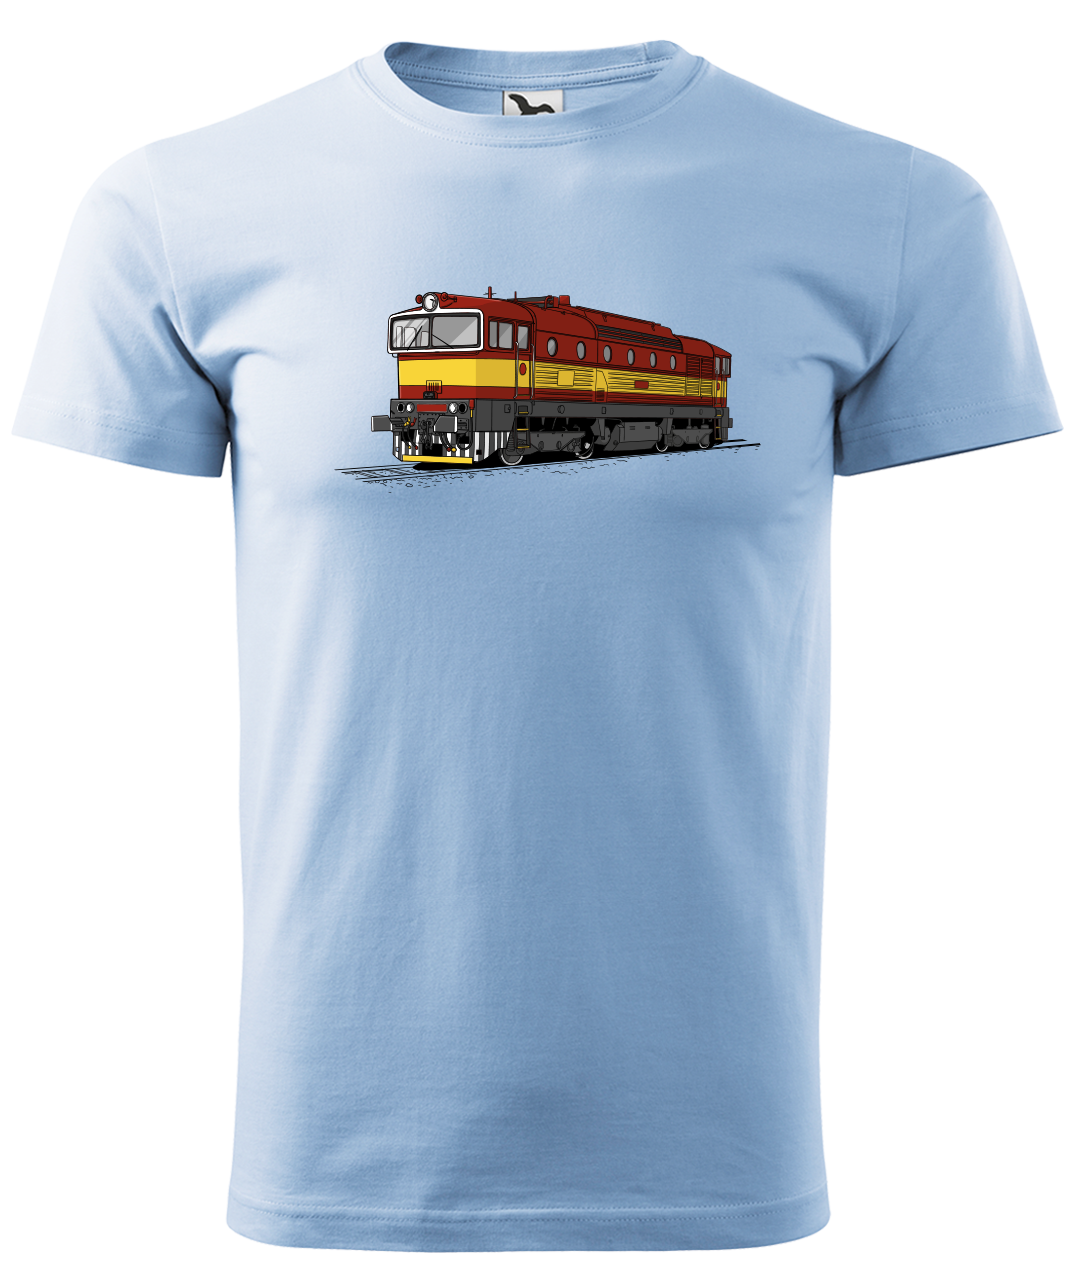 Dětské tričko s vlakem - Barevná lokomotiva BREJLOVEC Velikost: 4 roky / 110 cm, Barva: Nebesky modrá (15)